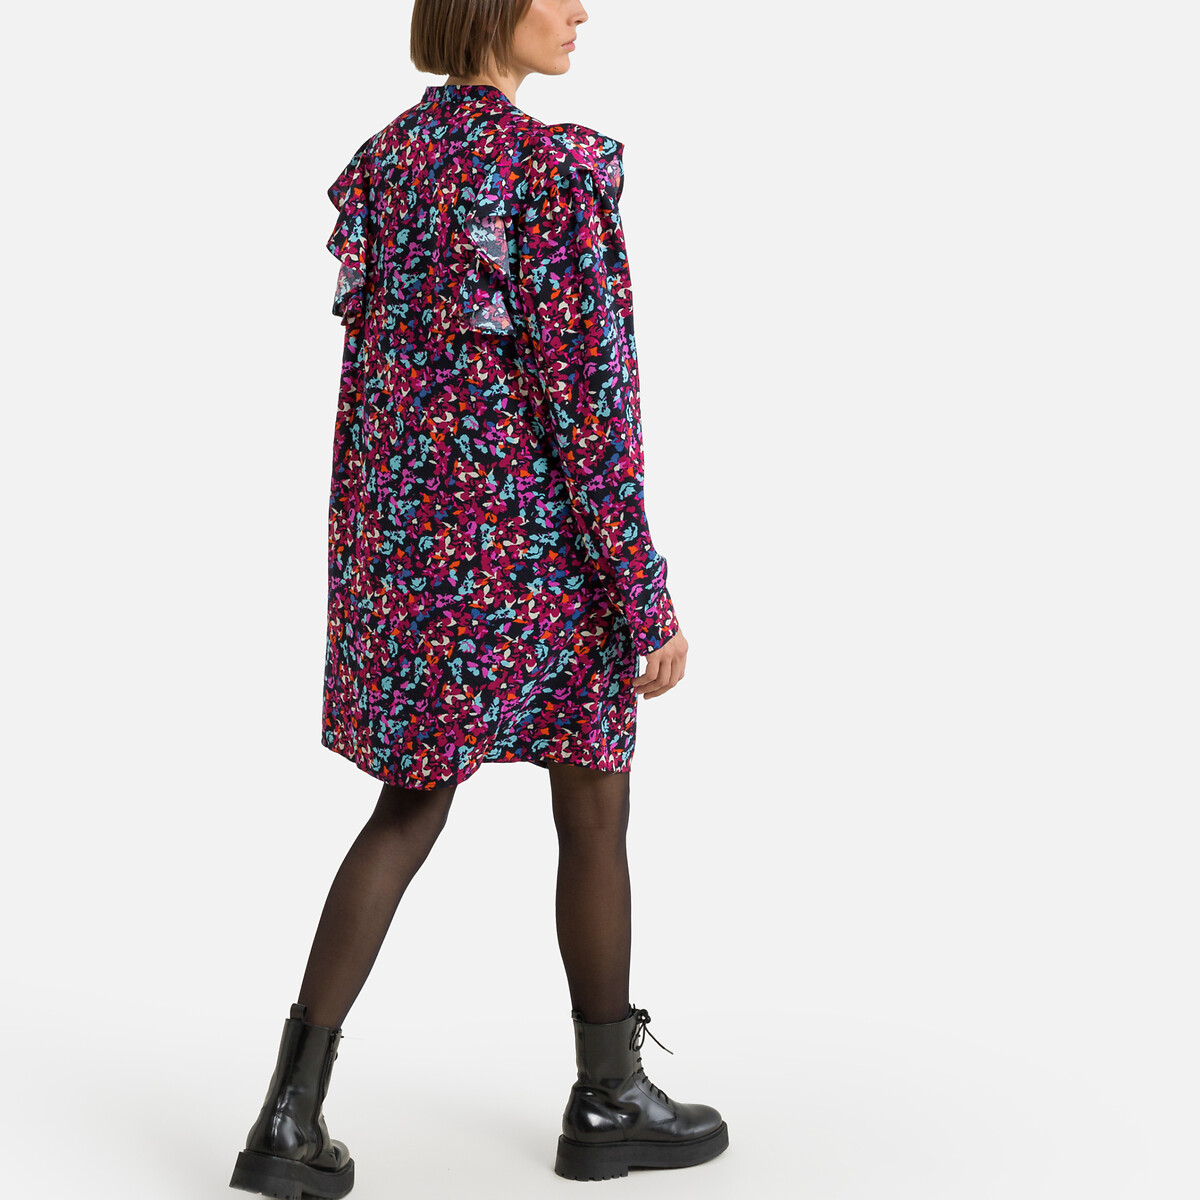 Платье С воротником-стойкой длинные рукава цветочный принт S разноцветный LaRedoute, размер S - фото 4